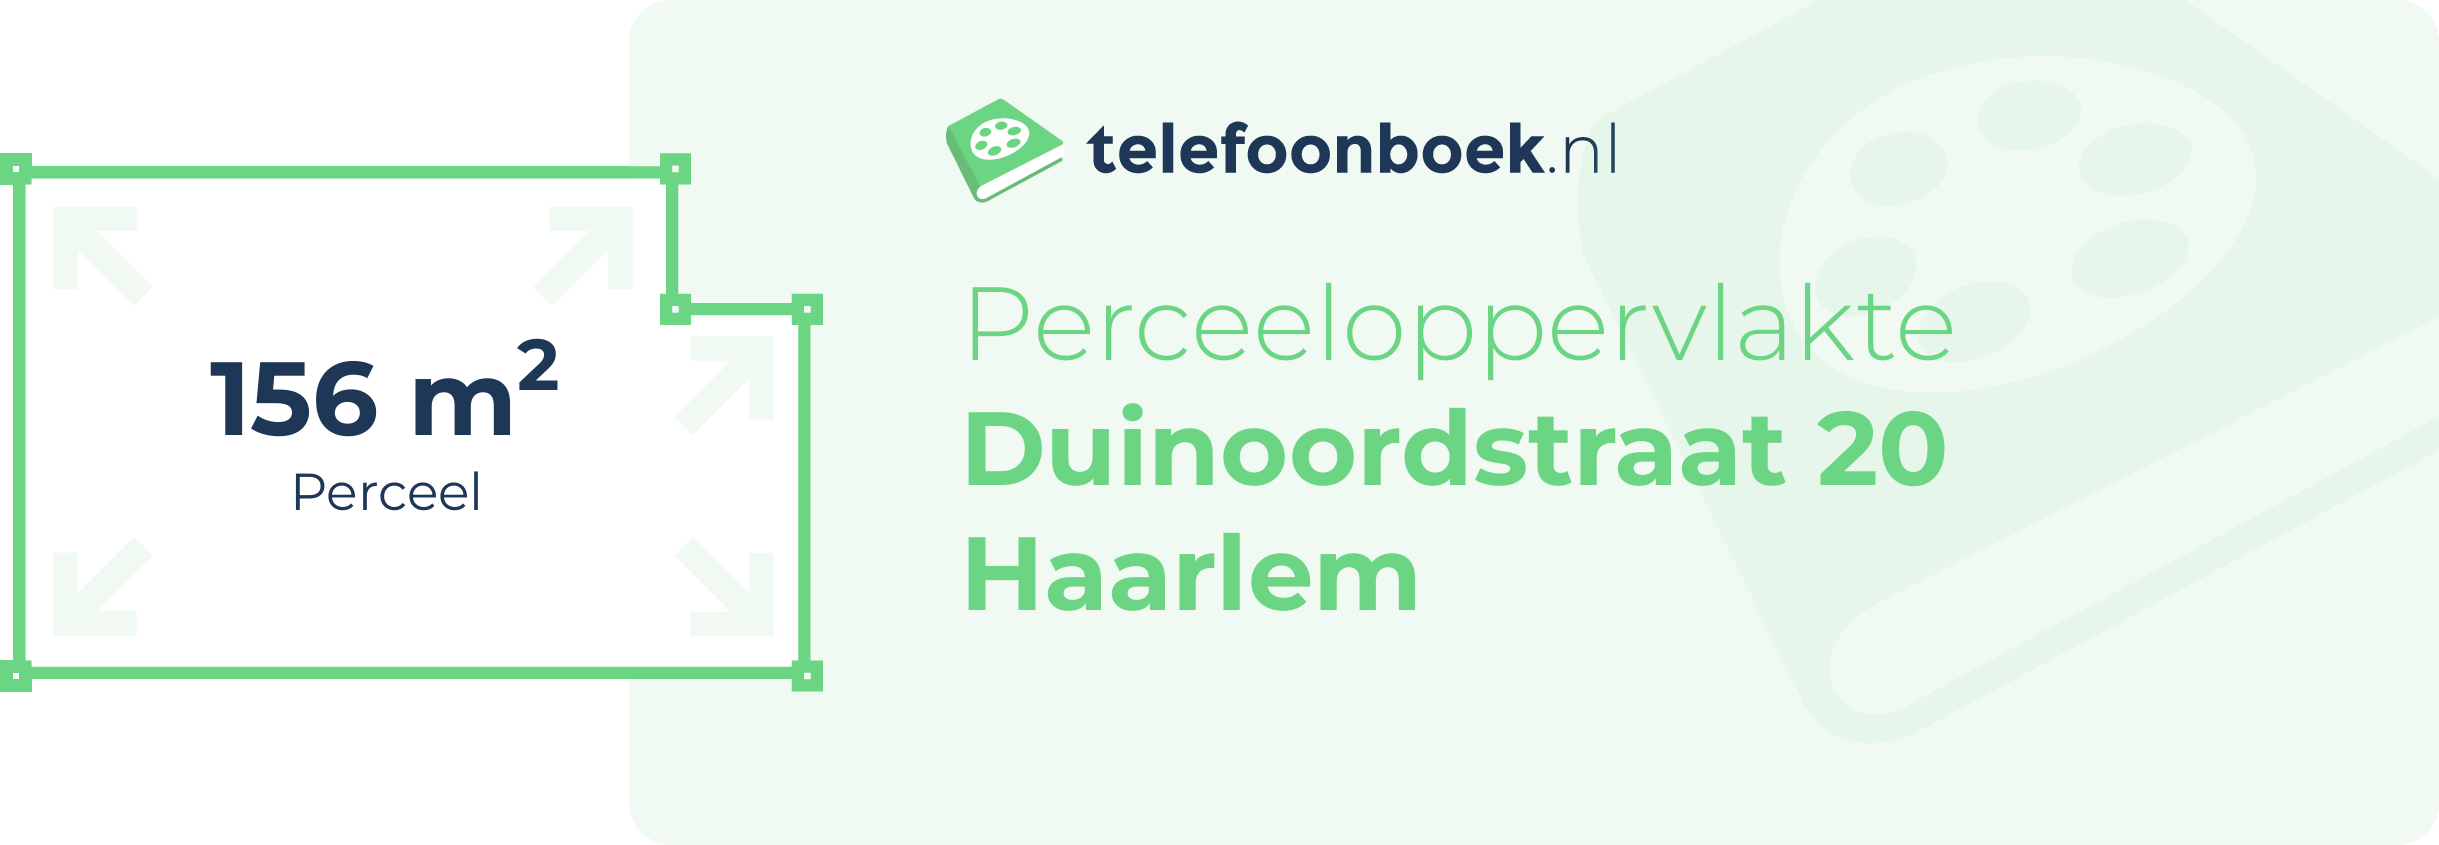 Perceeloppervlakte Duinoordstraat 20 Haarlem